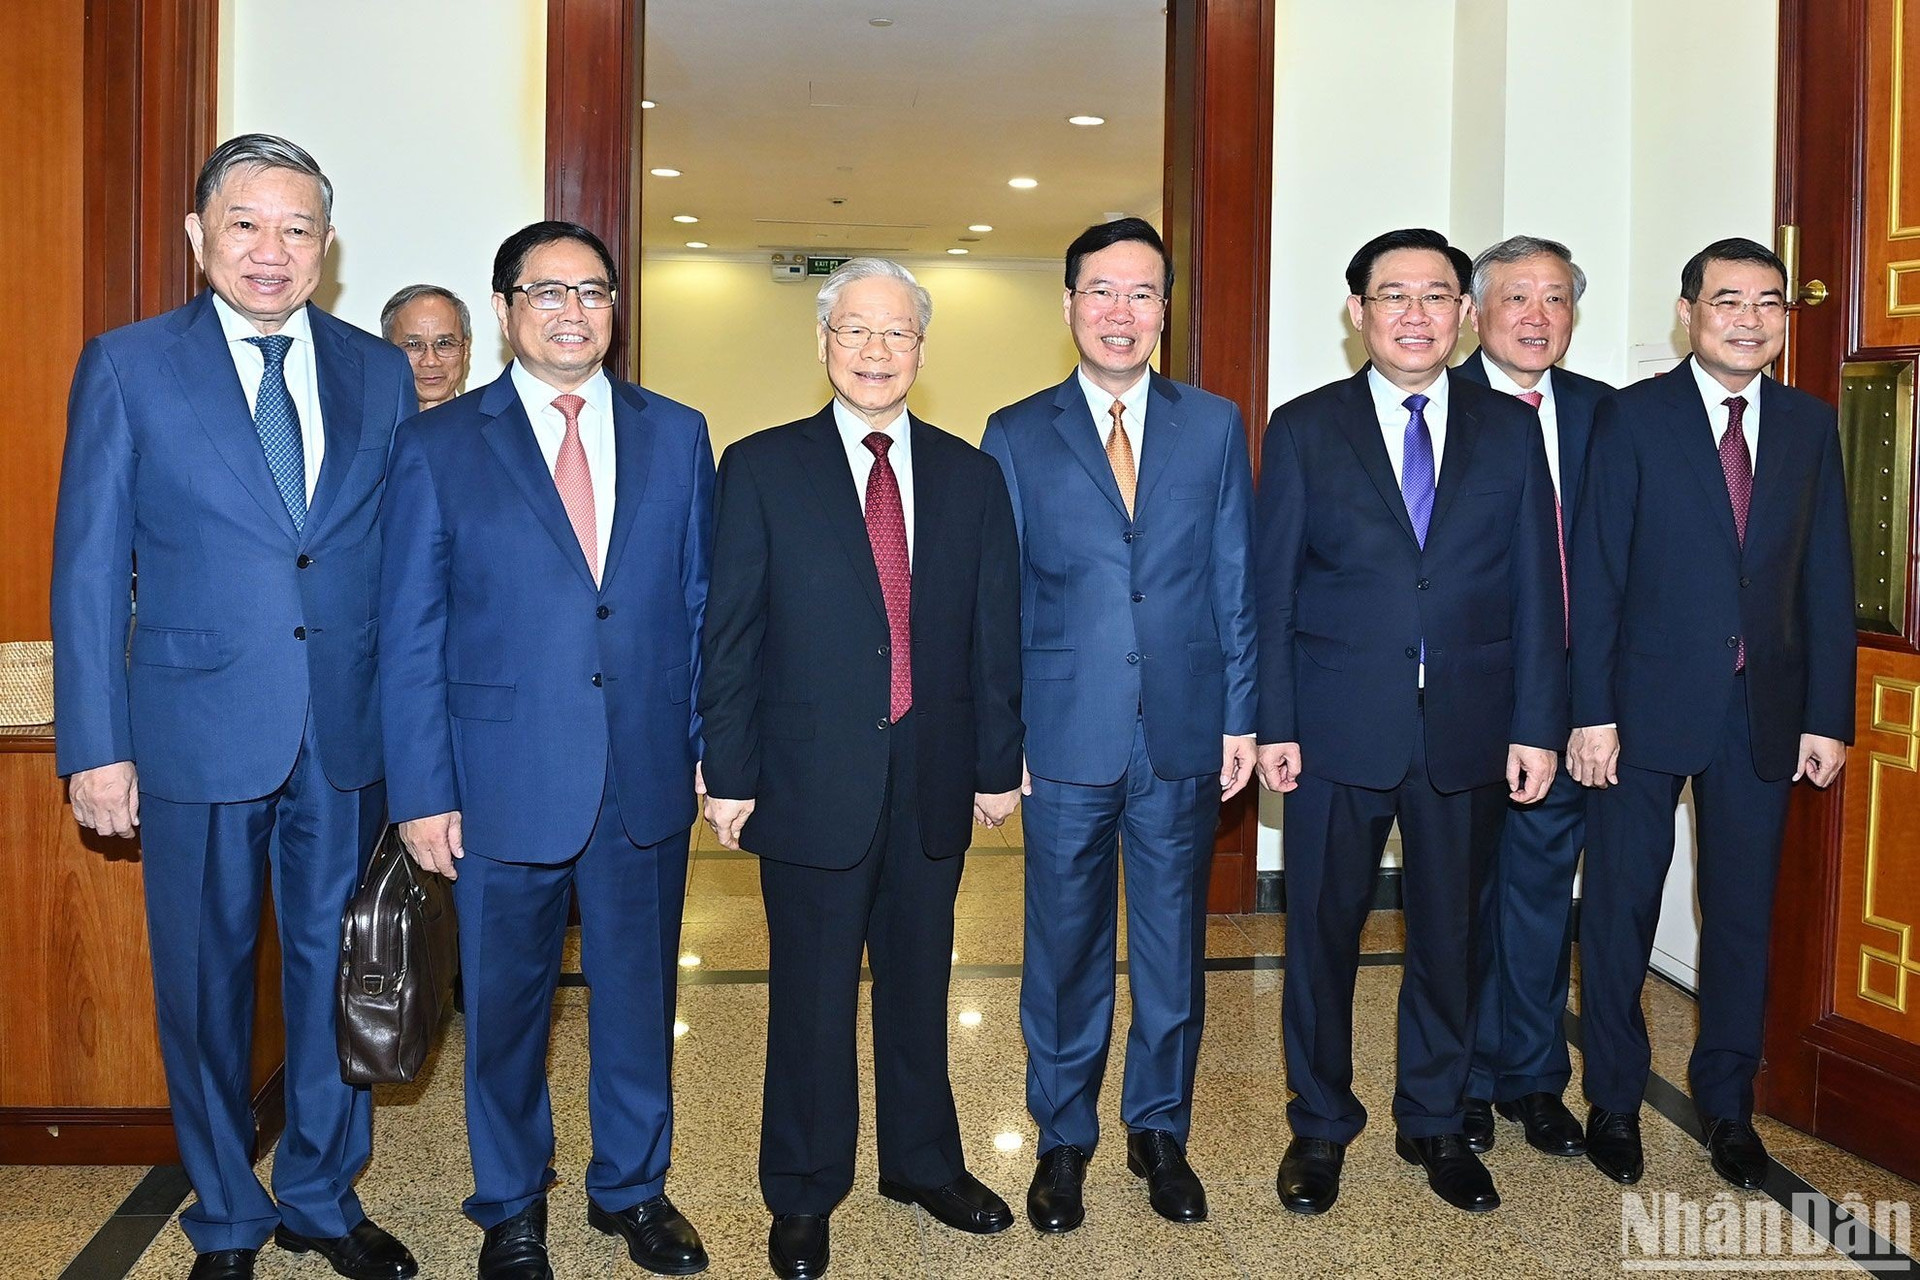 Tổng Bí thư Nguyễn Phú Trọng và các đồng chí lãnh đạo Đảng, Nhà nước cùng các đại biểu dự phiên bế mạc hội nghị.